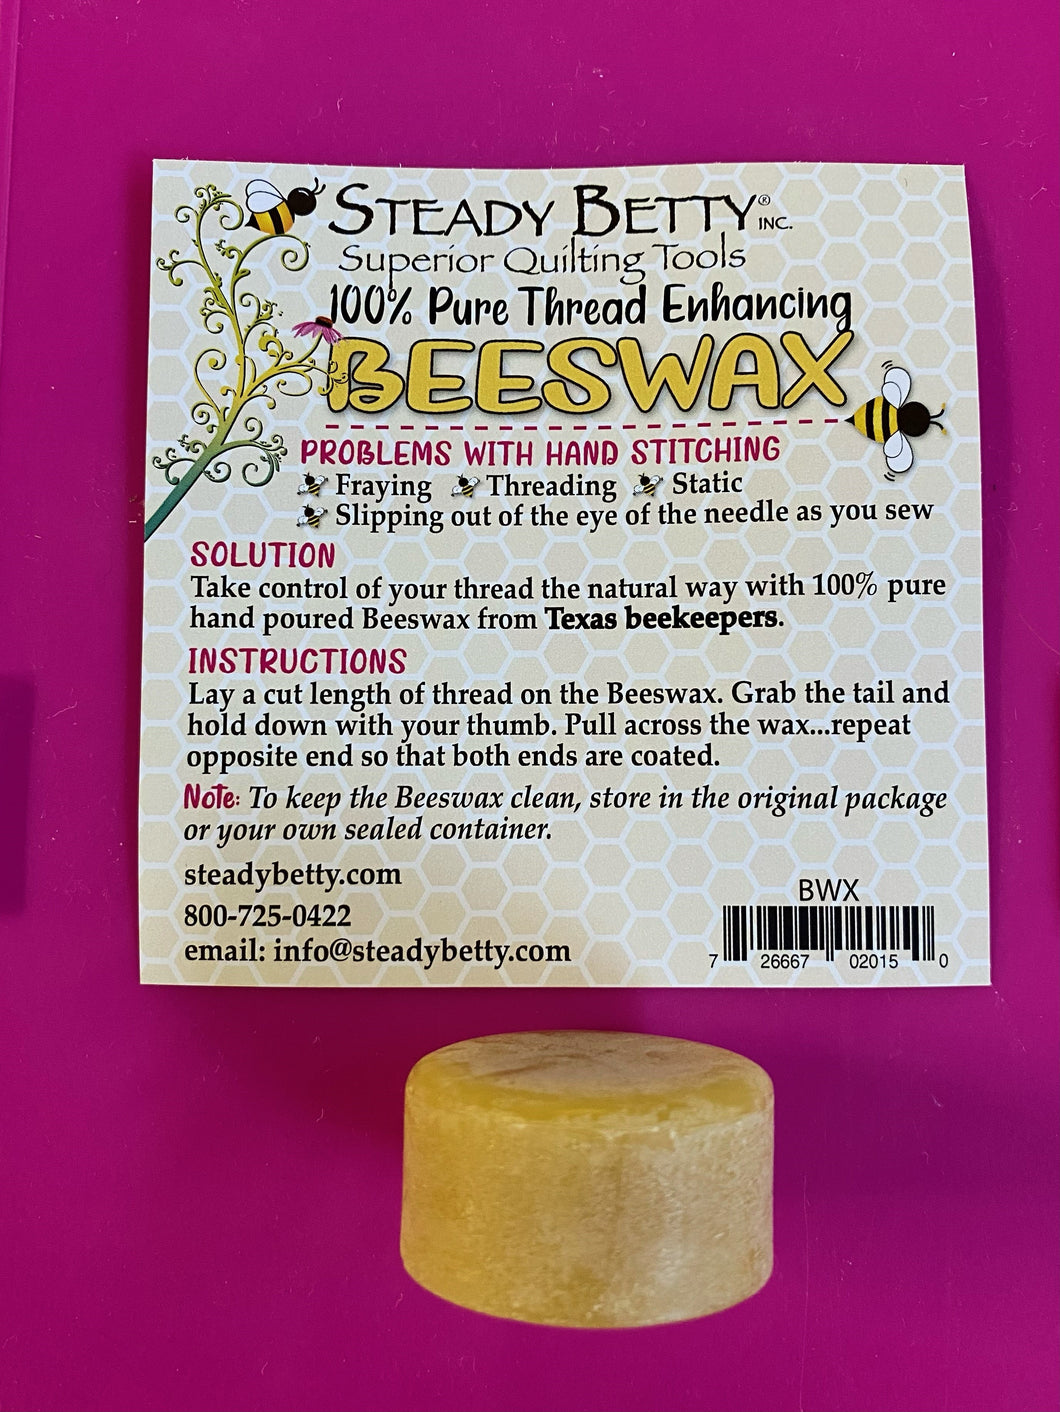 Thread Enhancing Beeswax